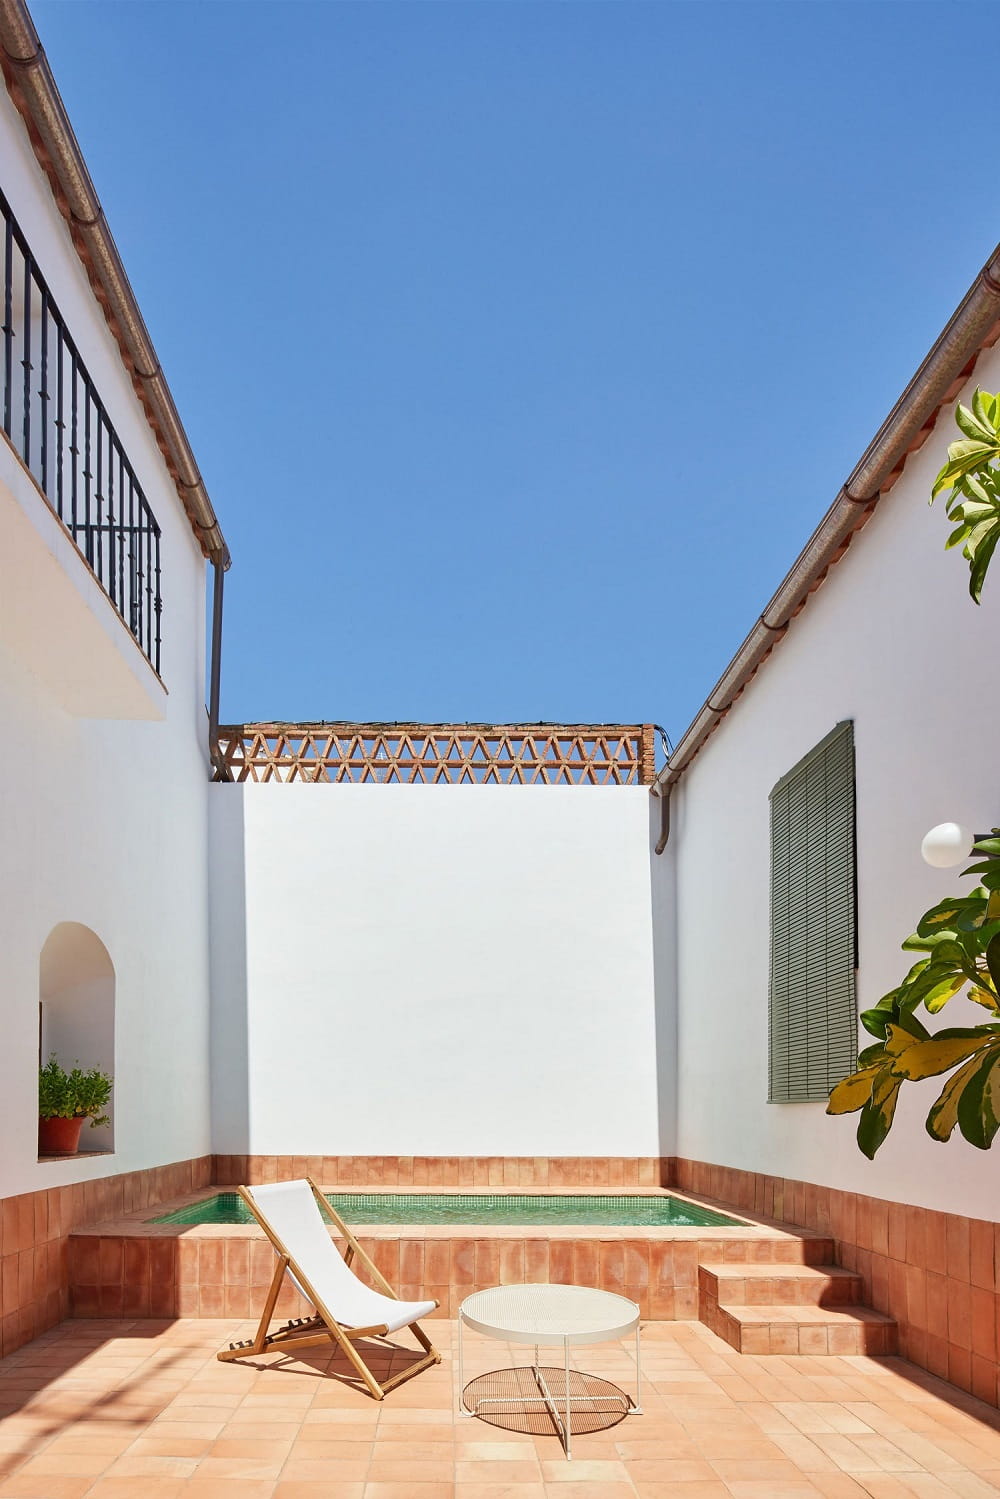 Casa Rural in Badajoz Designed by Lucas y Hernandez-Gil